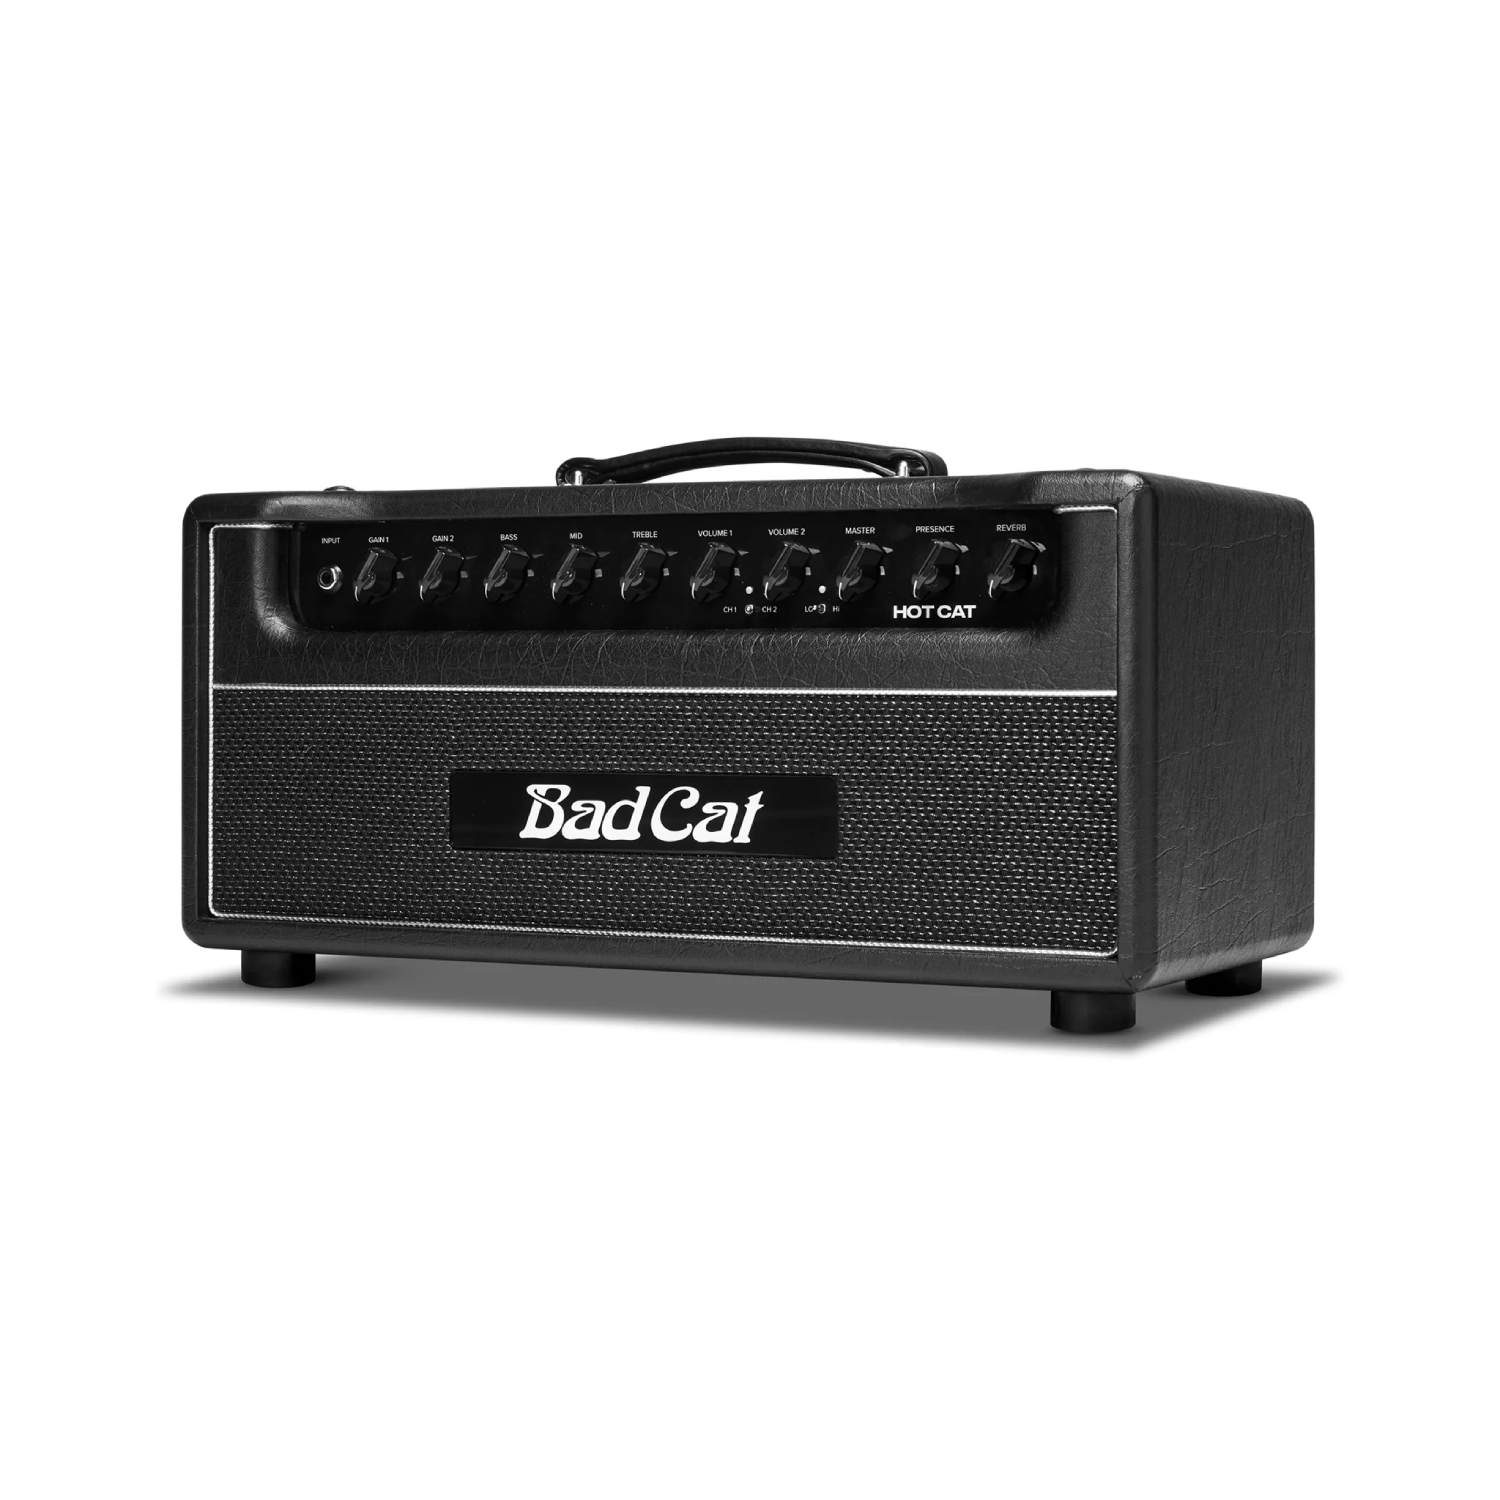 Bad Cat Hot Cat 45W Valve Guitar Amp Head